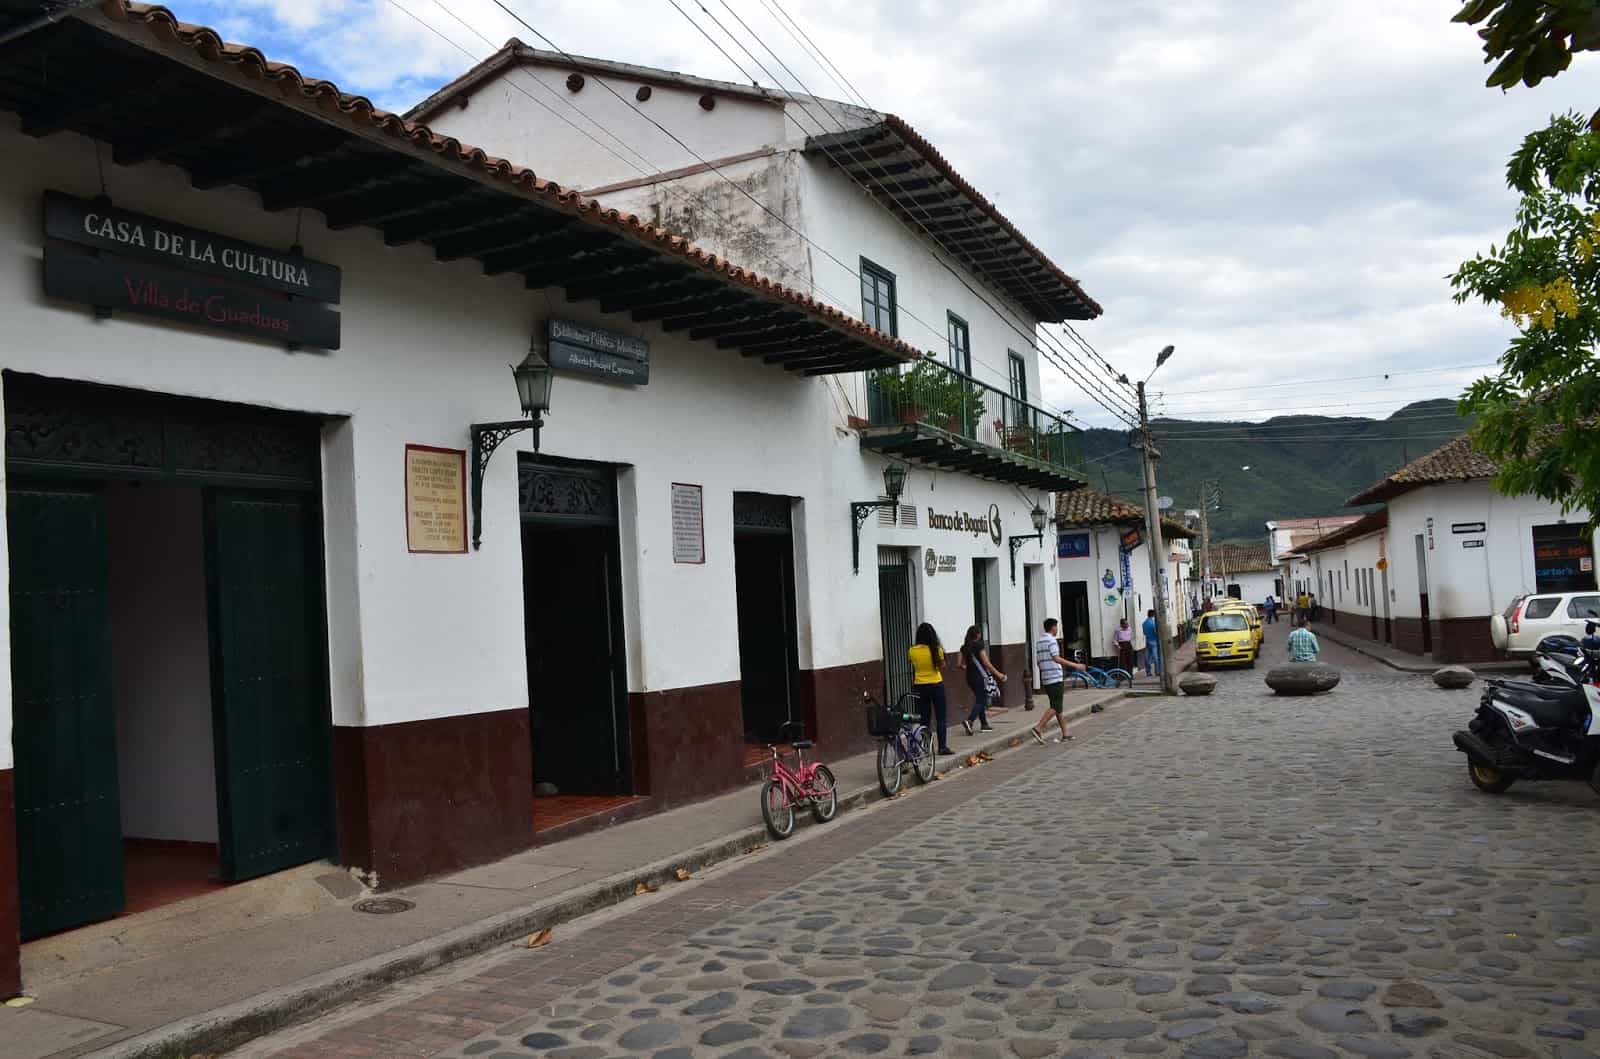 Casa de la Cultura in Guaduas, Cundinamarca, Colombia